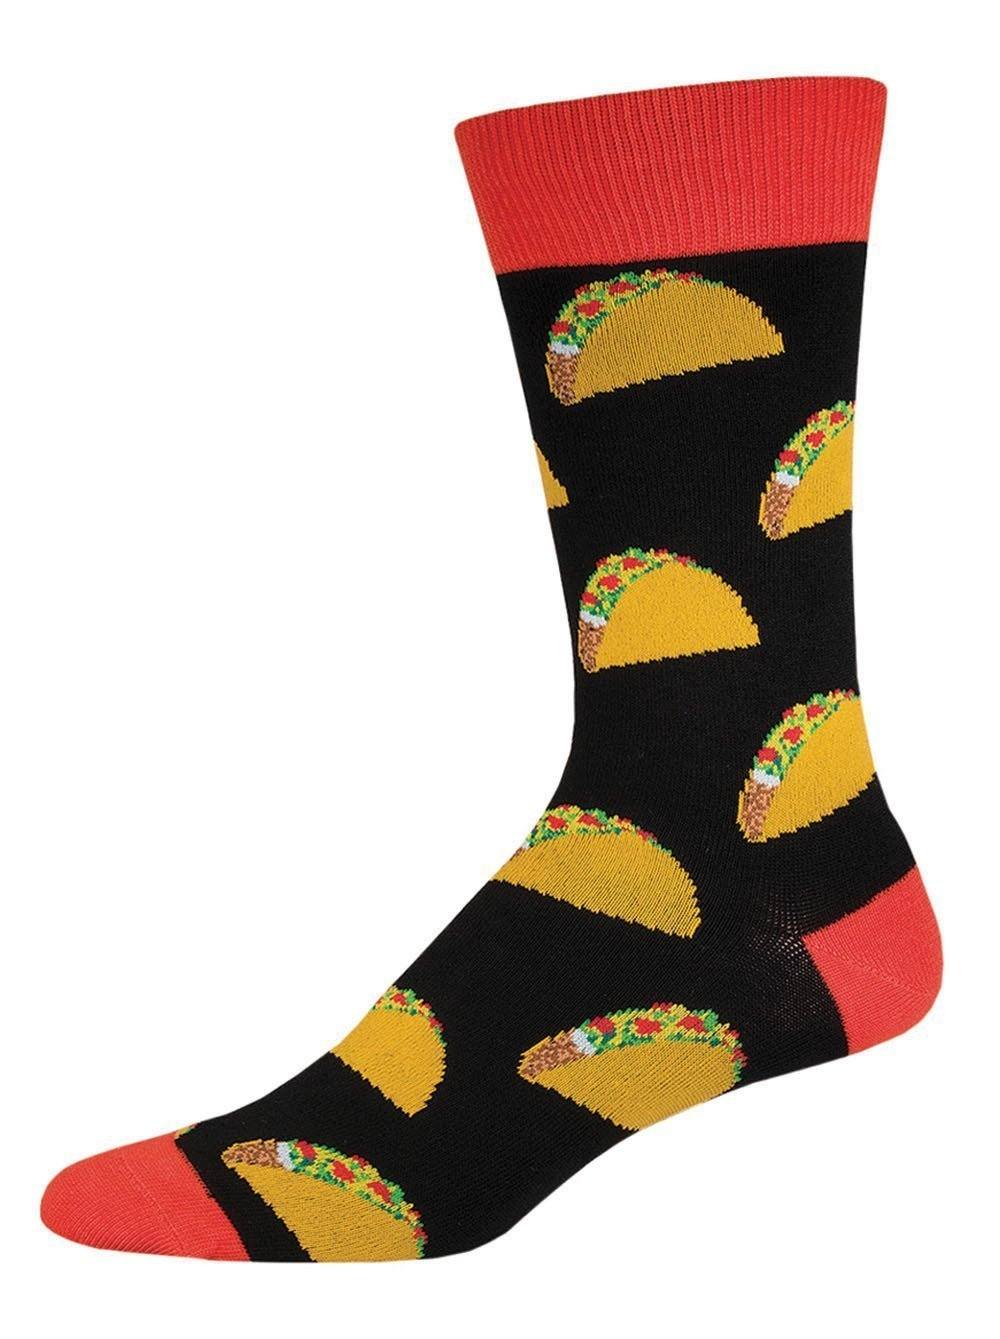 Socksmith - King Size Tacos Crew Socks | Men's - Knock Your Socks Off